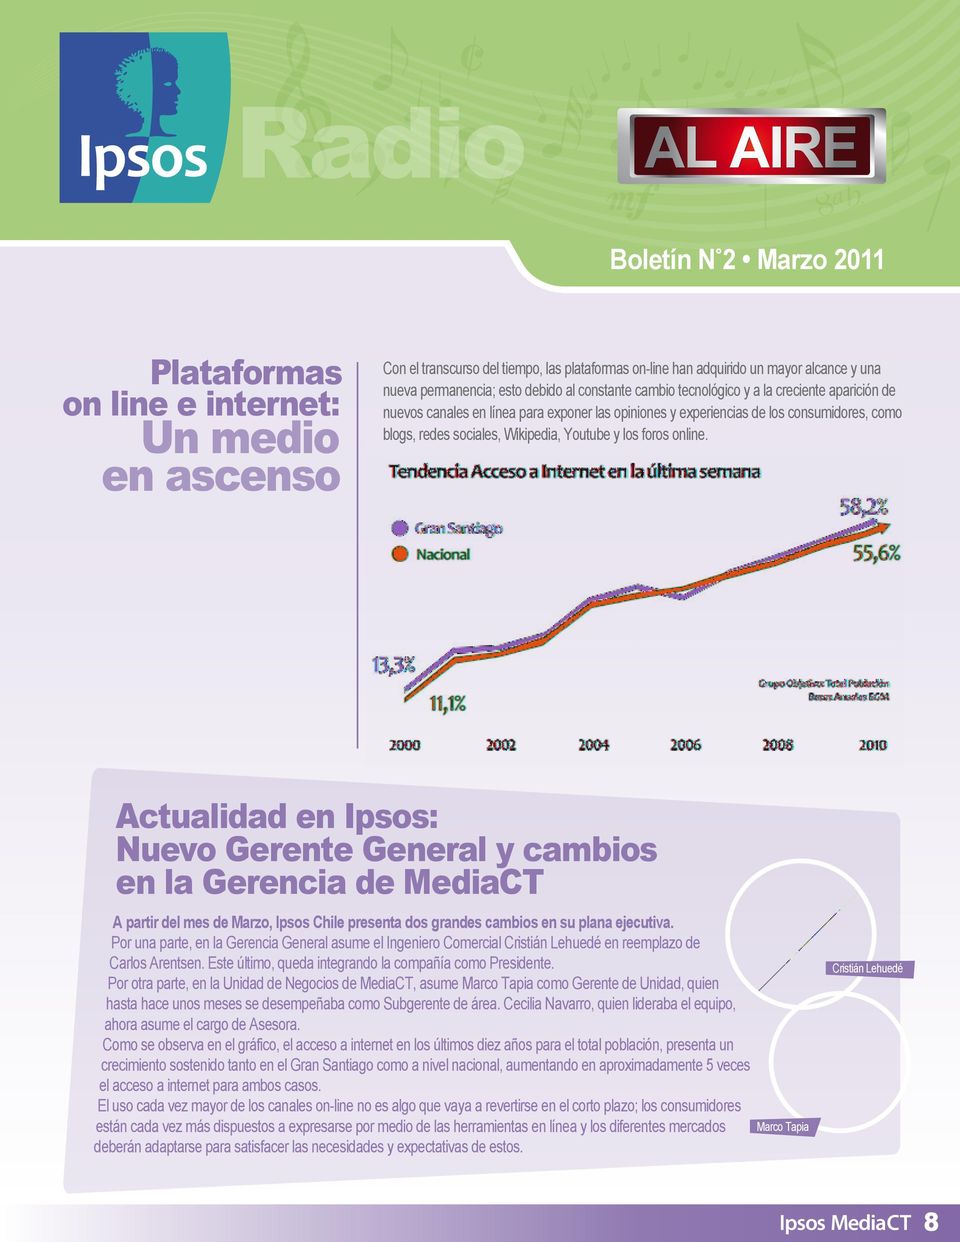 Actualidad en Ipsos: Nuevo Gerente General y cambios en la Gerencia de MediaCT A partir del mes de Marzo, Ipsos Chile presenta dos grandes cambios en su plana ejecutiva.